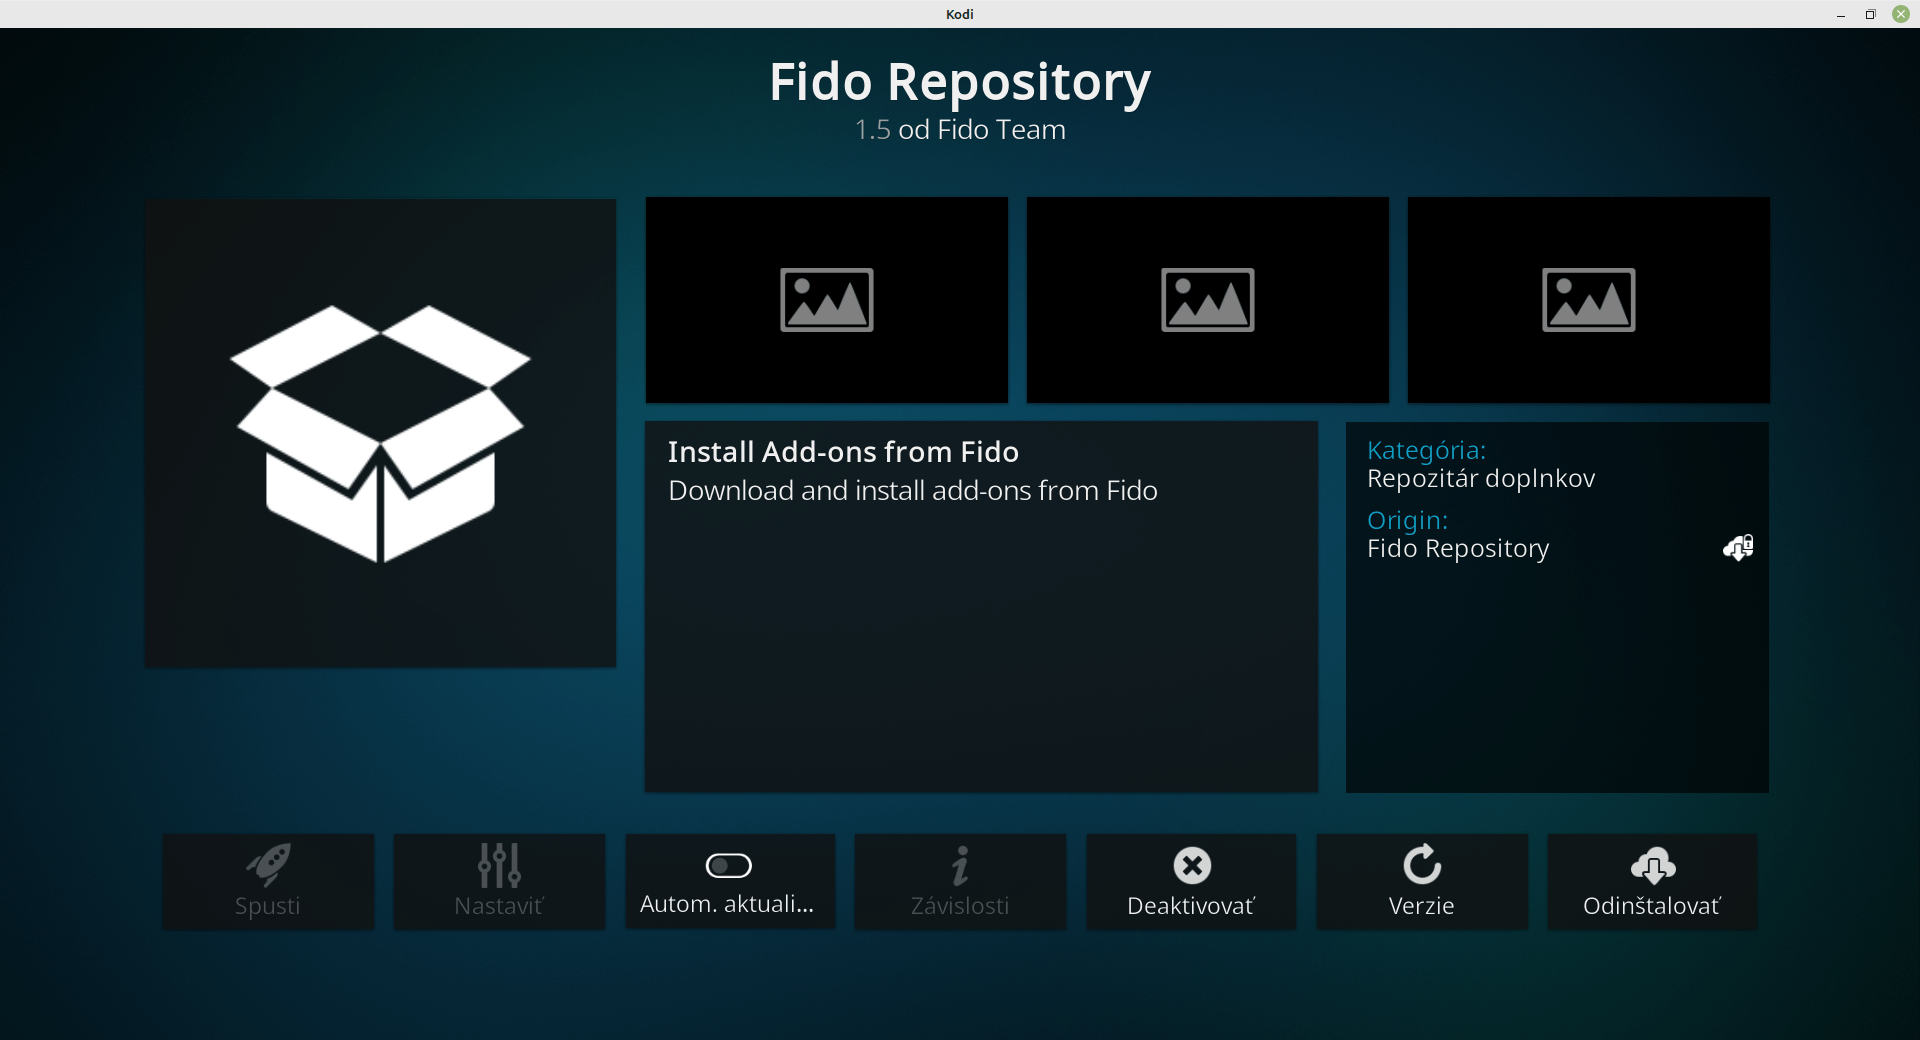 Fido Repository